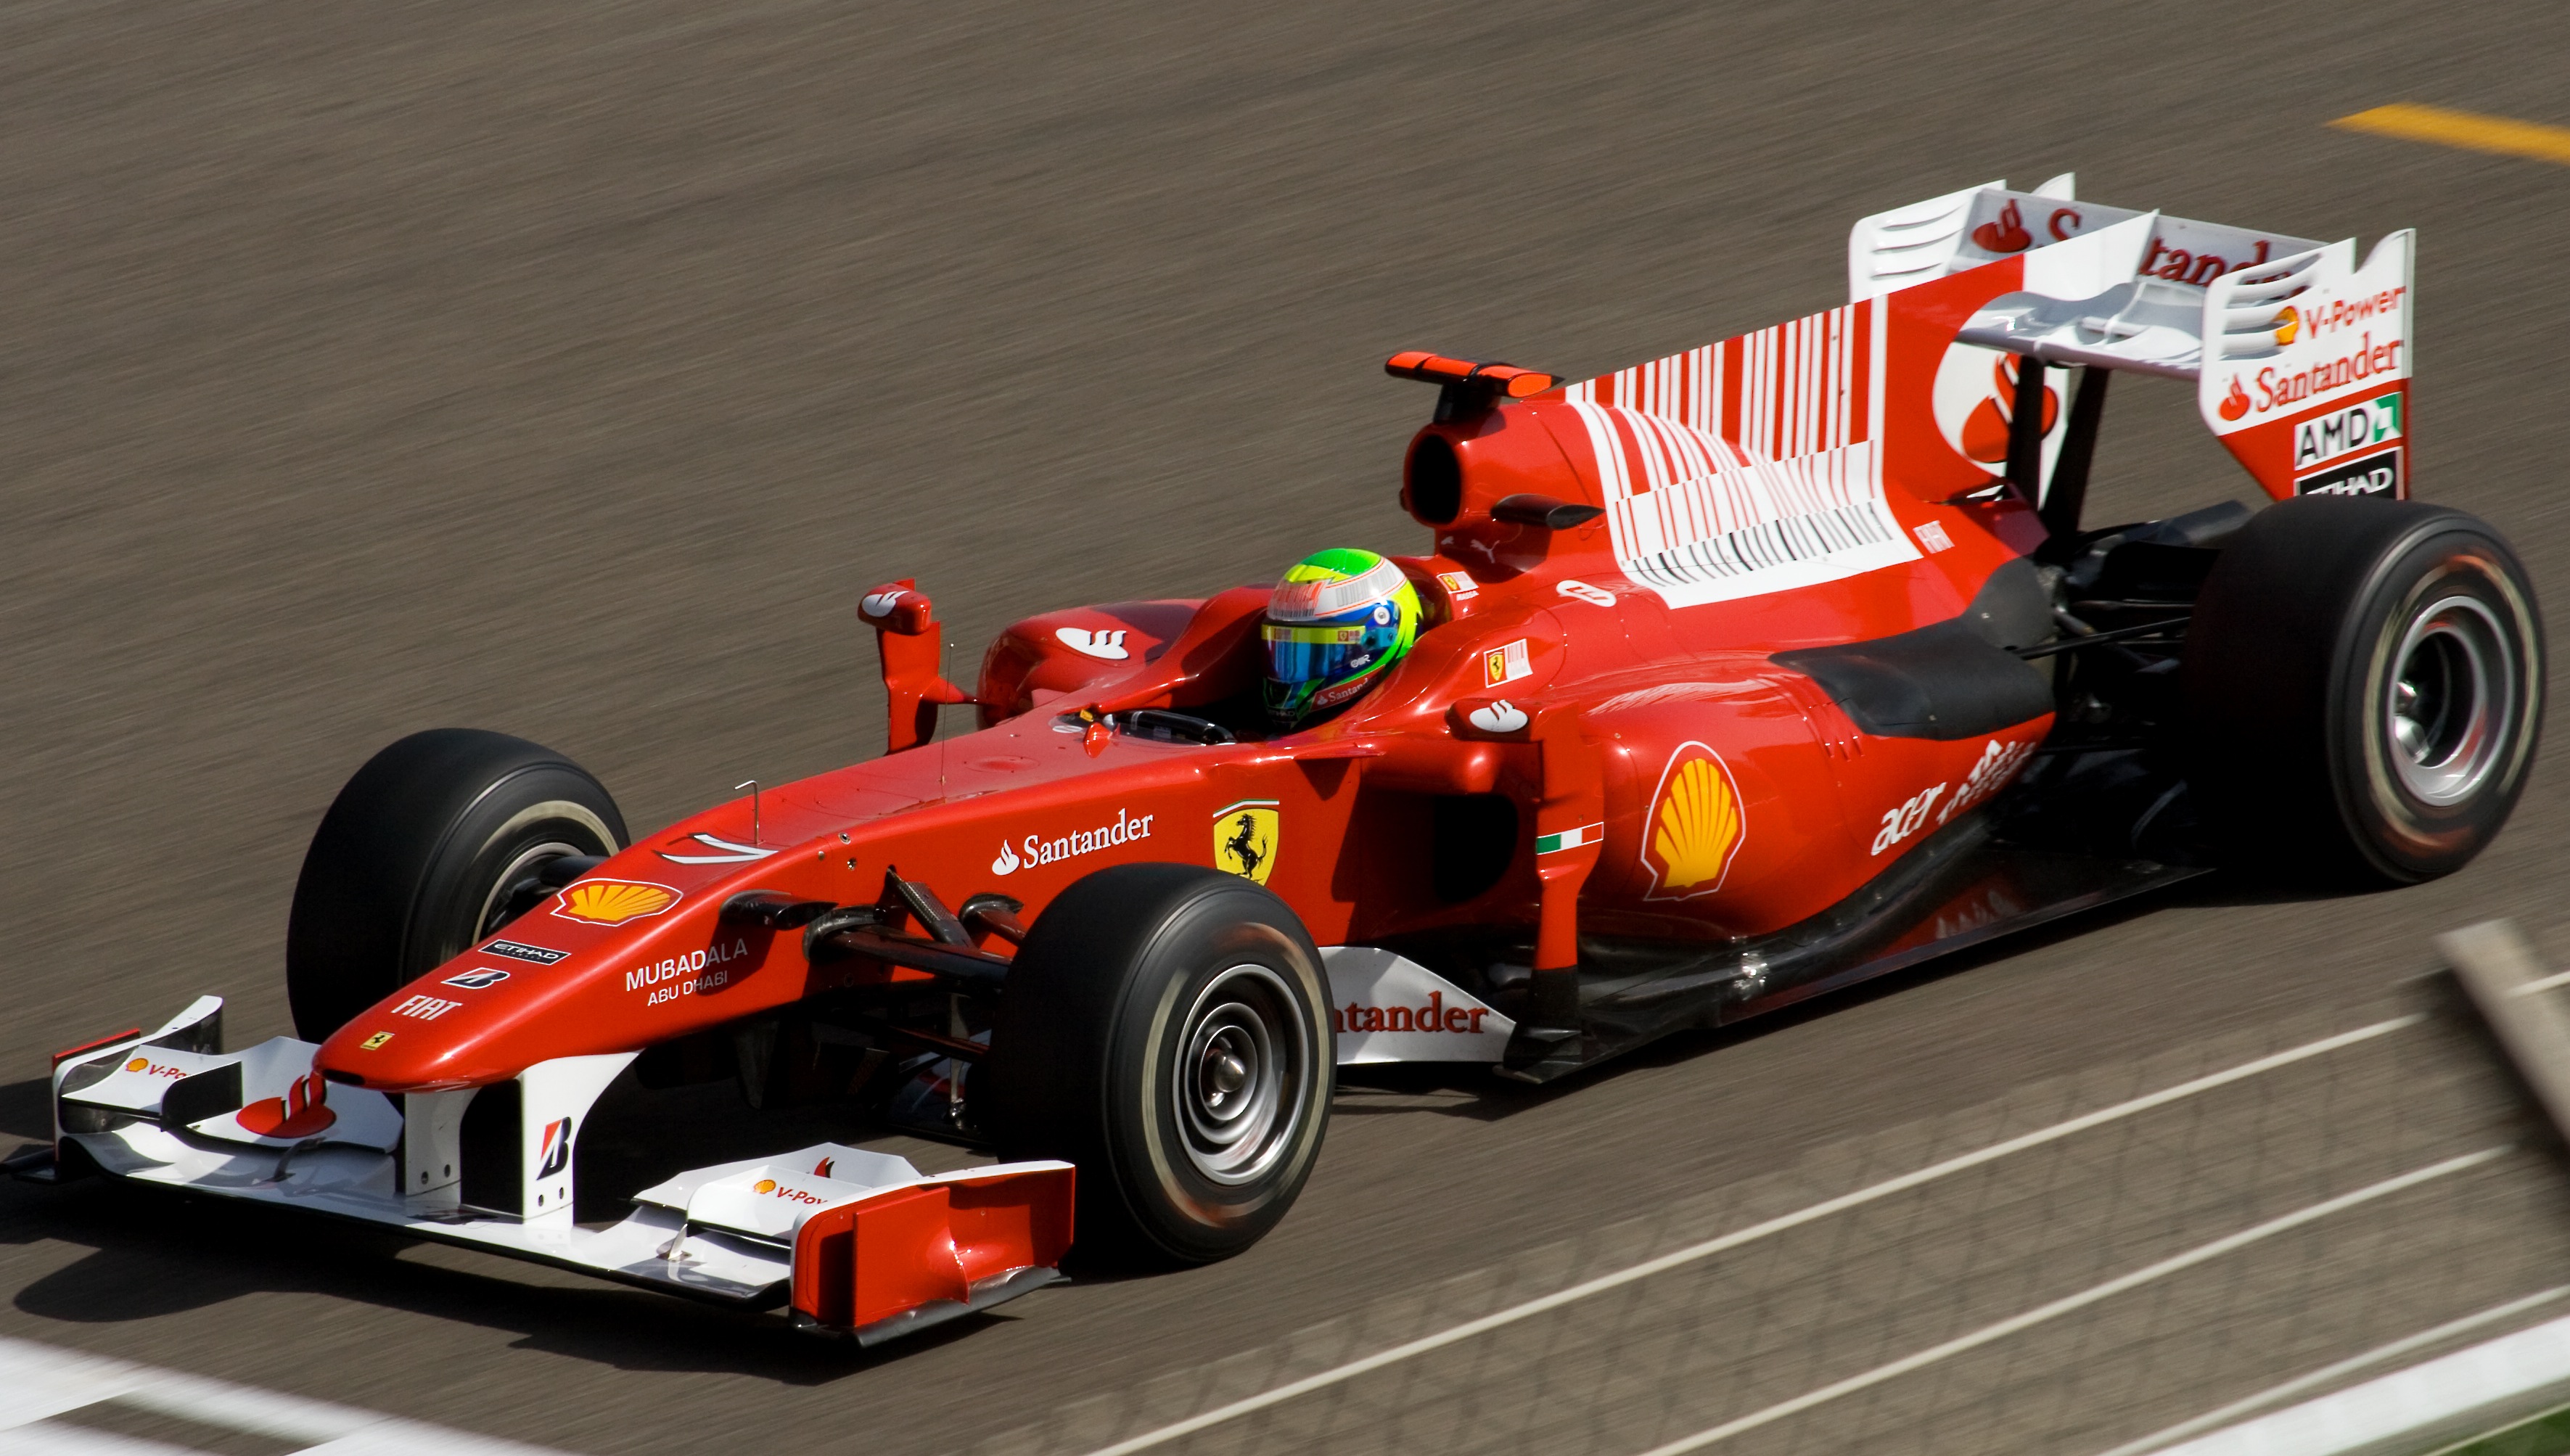 Felipe_Massa_Ferrari_Bahrain_2010_GP.jpg